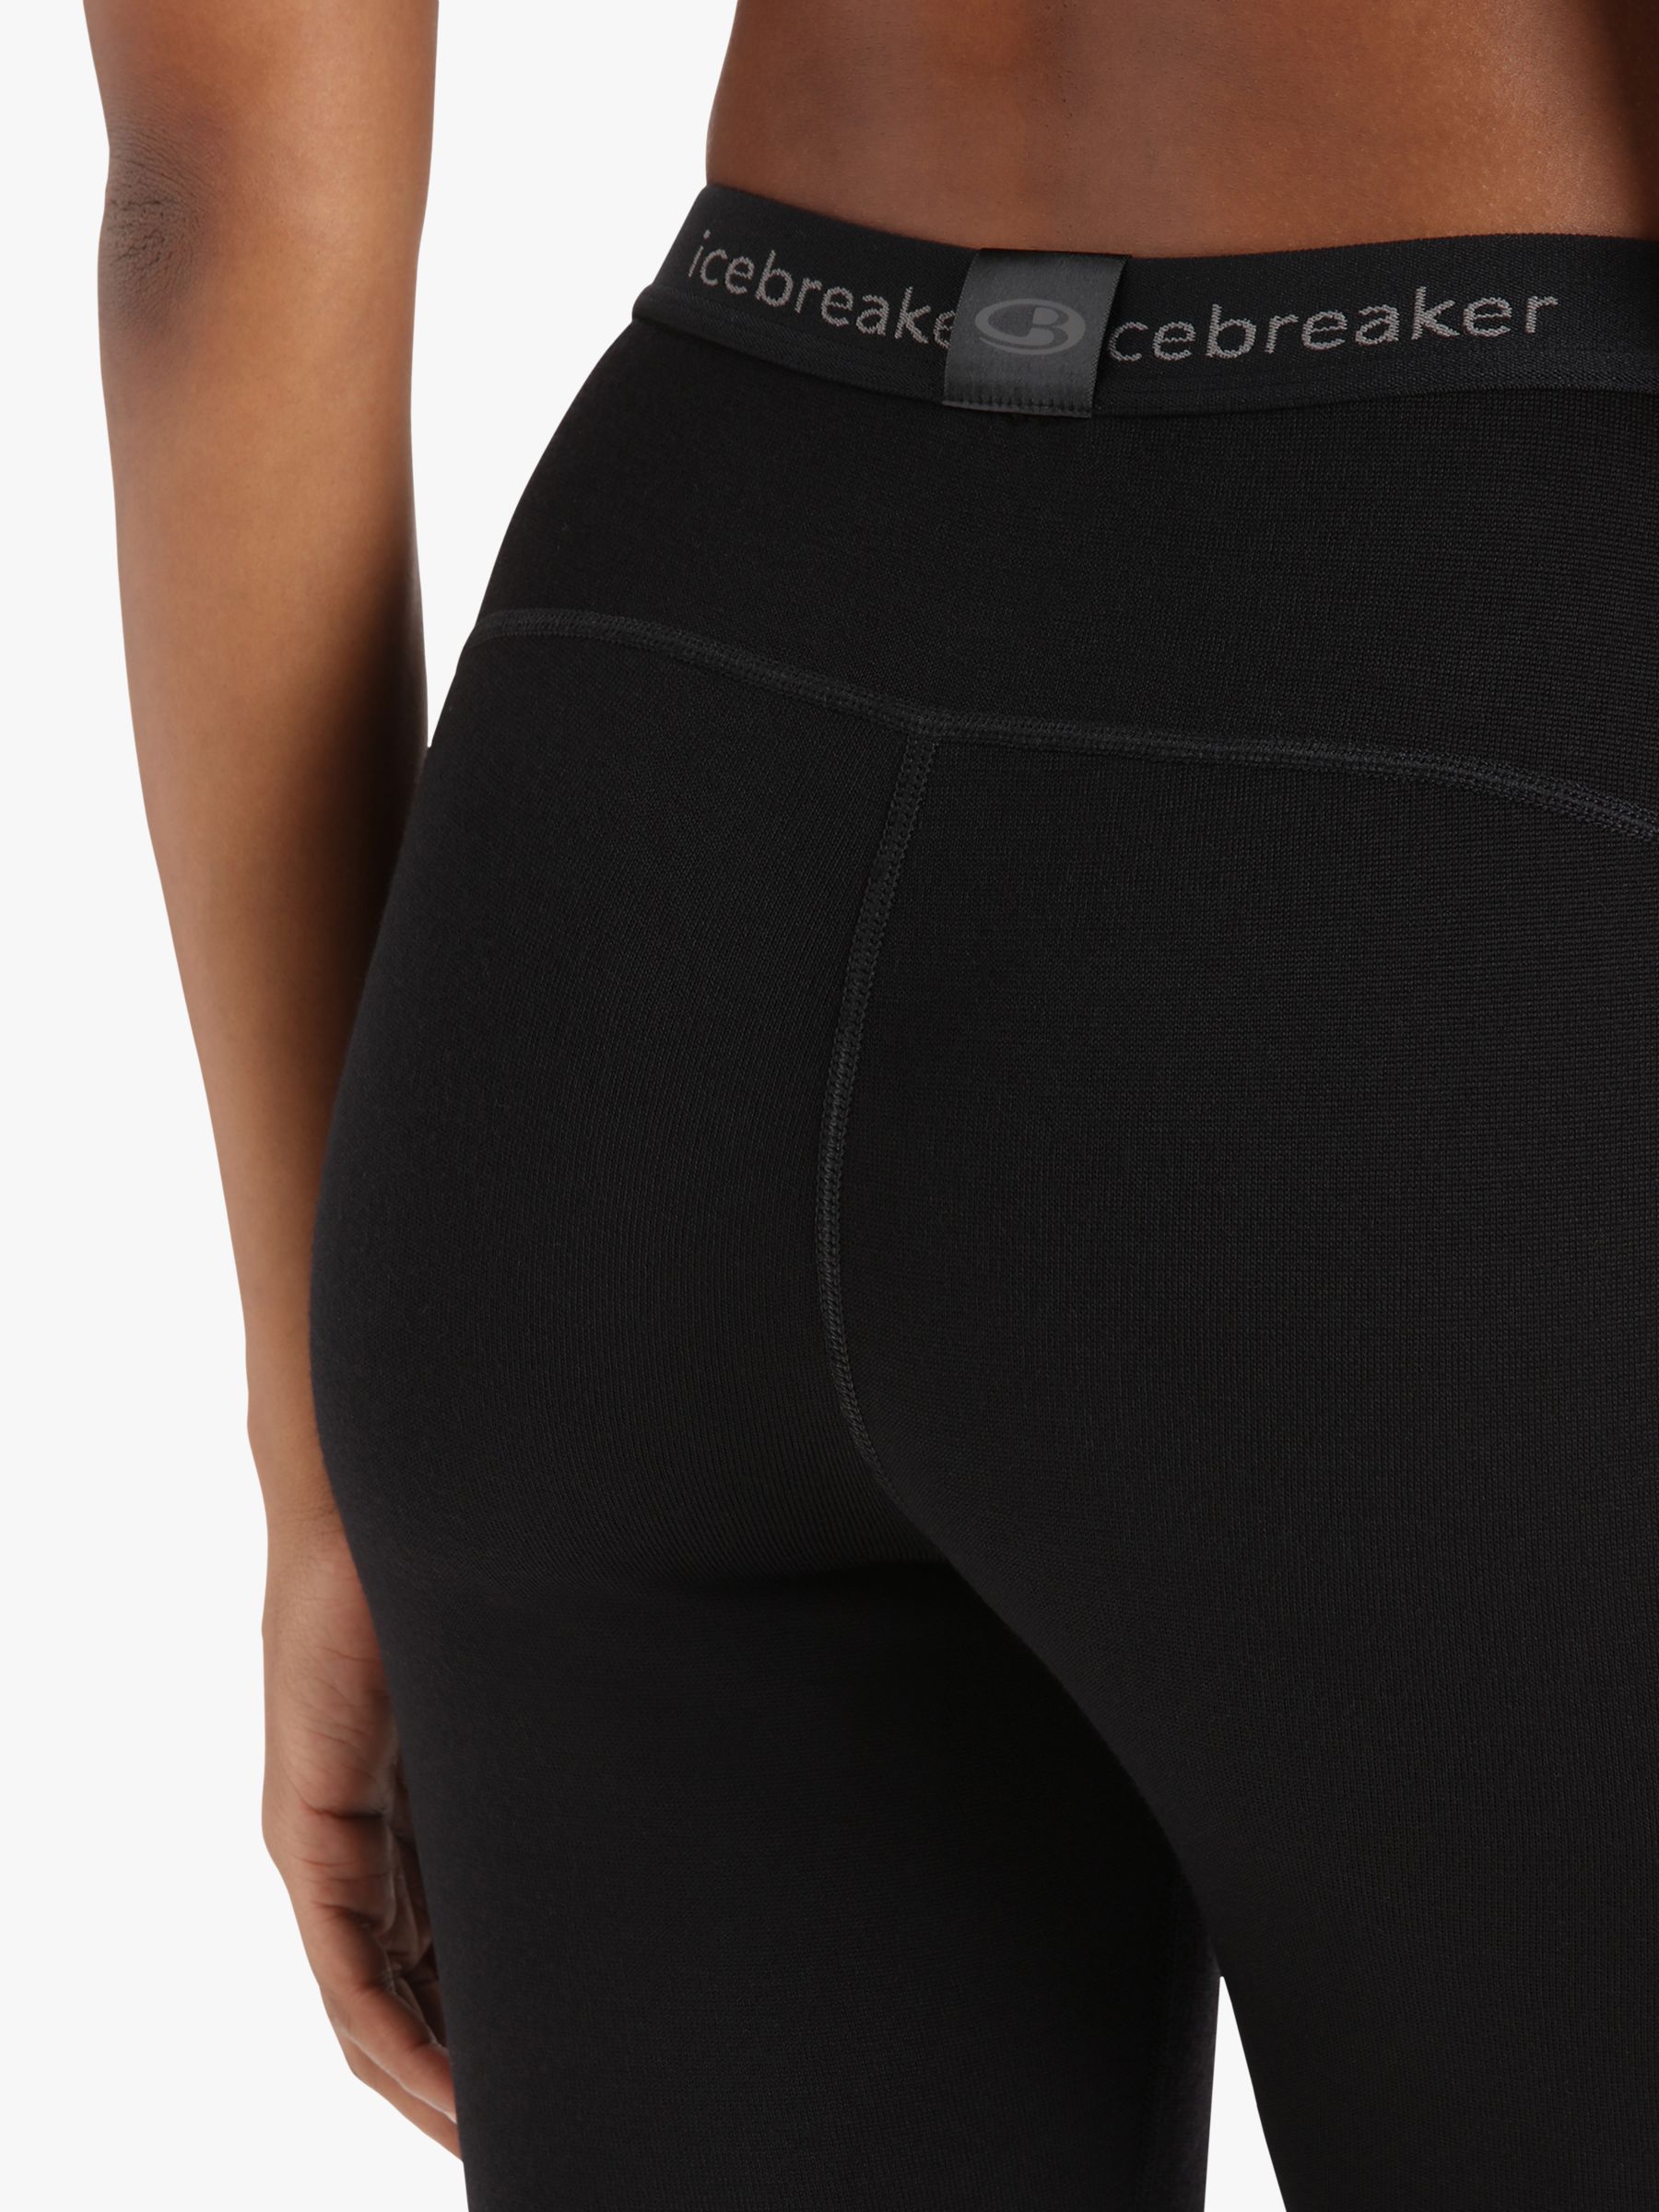 Buy Icebreaker Women's 260 Tech Merino Thermal Leggings Online at johnlewis.com